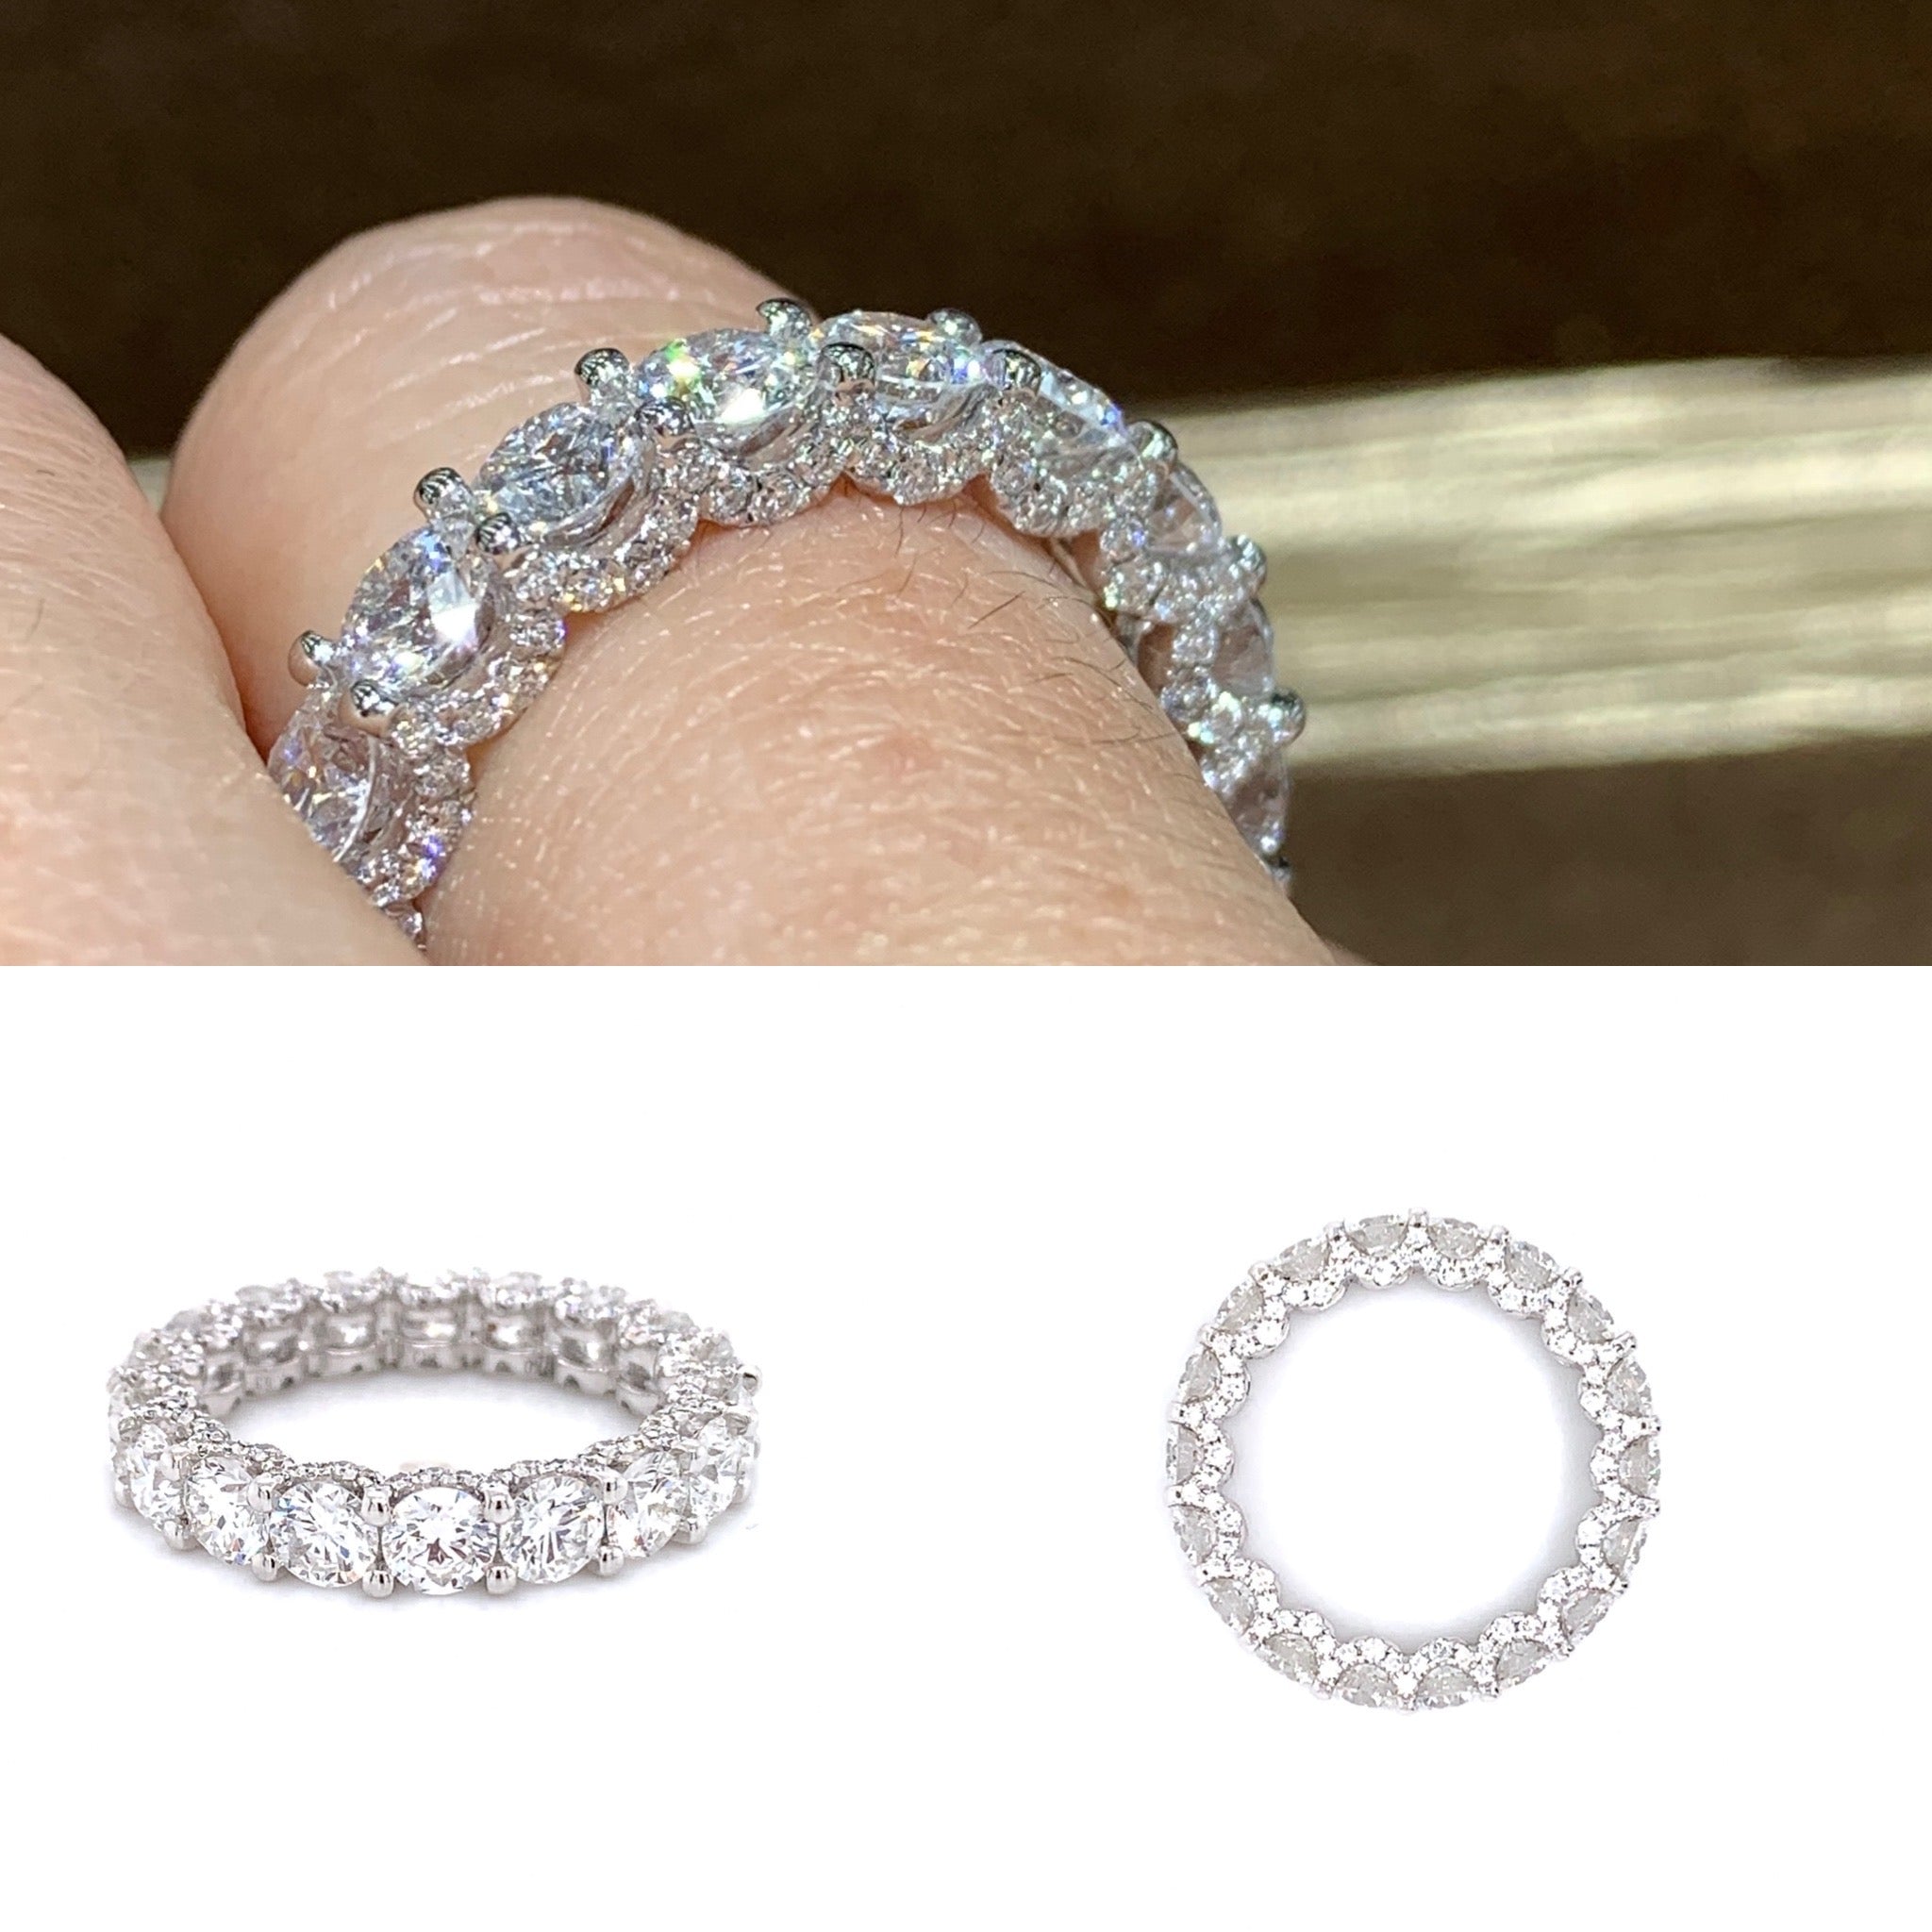 engagement ring diamond wedding band gold eternity ring anniversary Haniken Jewelers New York